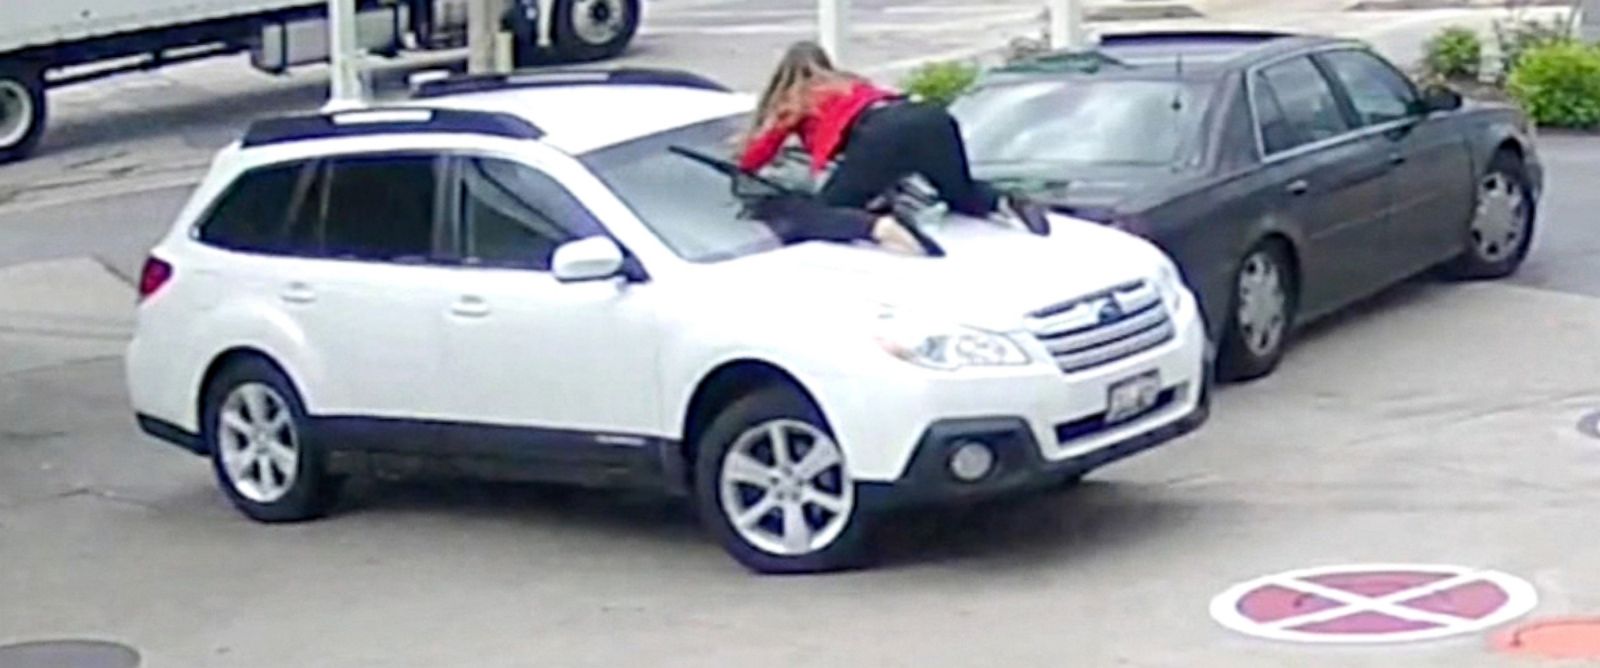 Δείτε γιατί αυτή η γυναίκα πήδηξε στο παρμπρίζ του αυτοκινήτου - Φωτογραφία 1